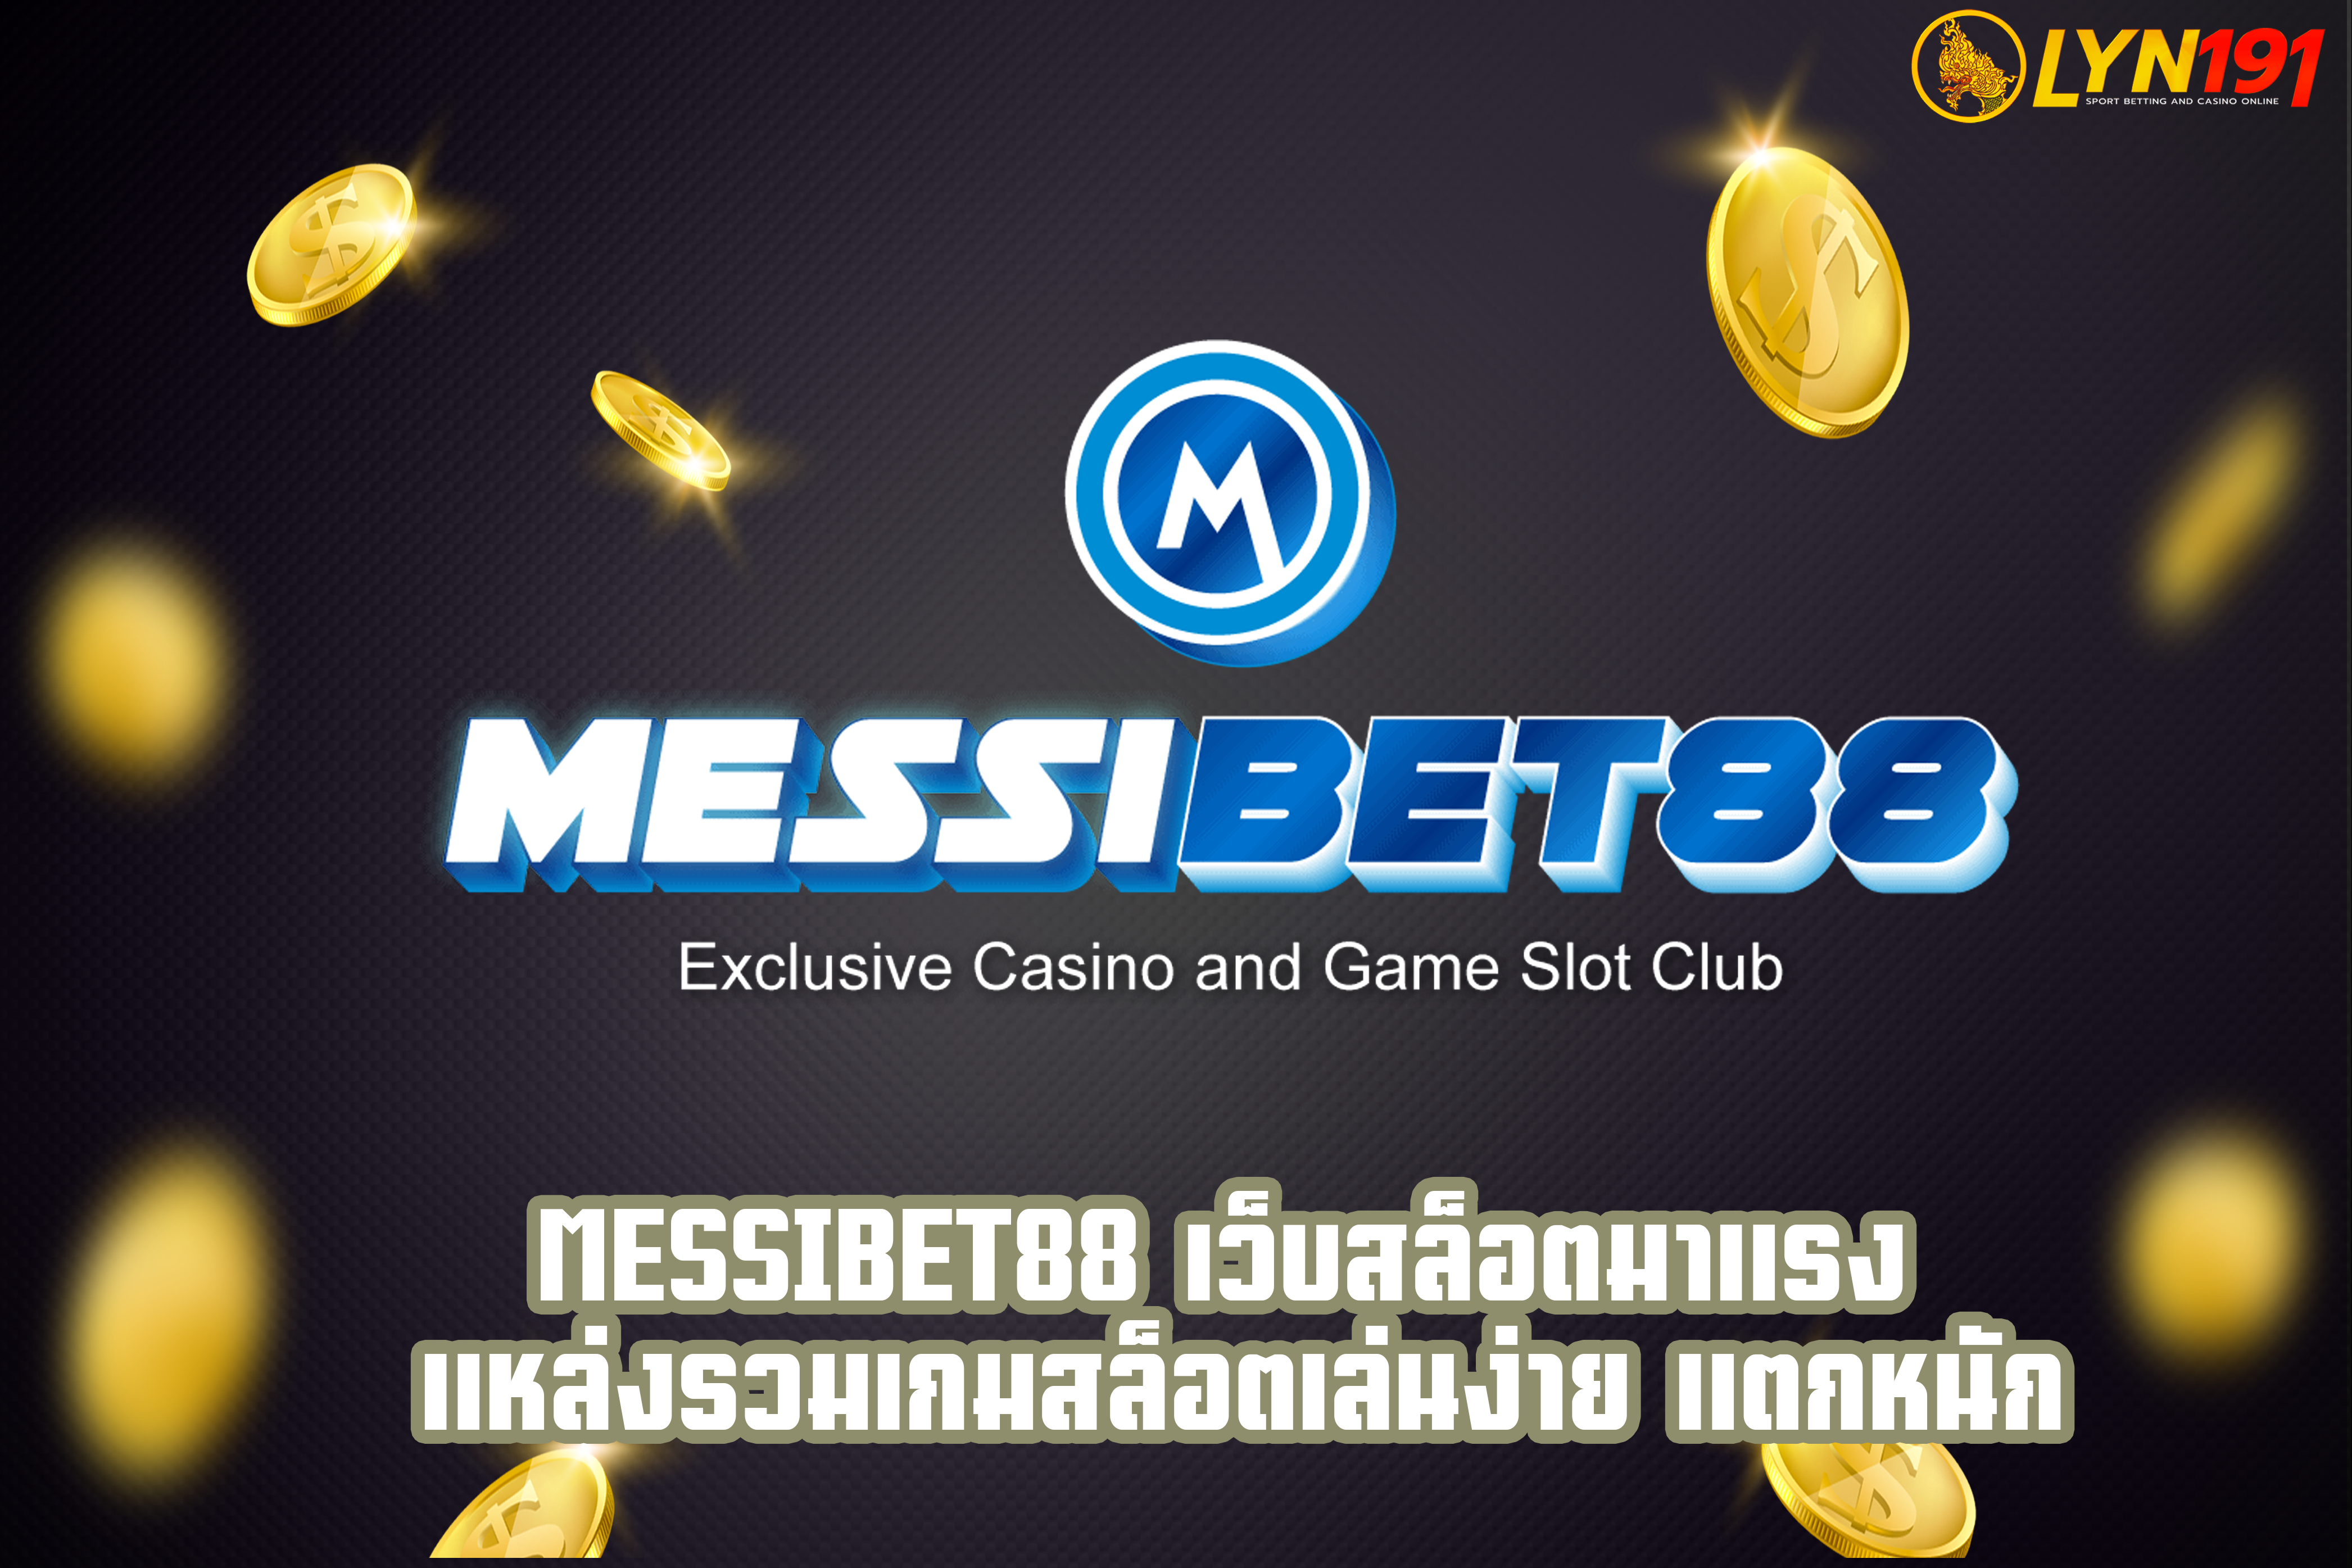 messibet88 เว็บสล็อตมาแรง แหล่งรวมเกมสล็อตเล่นง่าย แตกหนัก